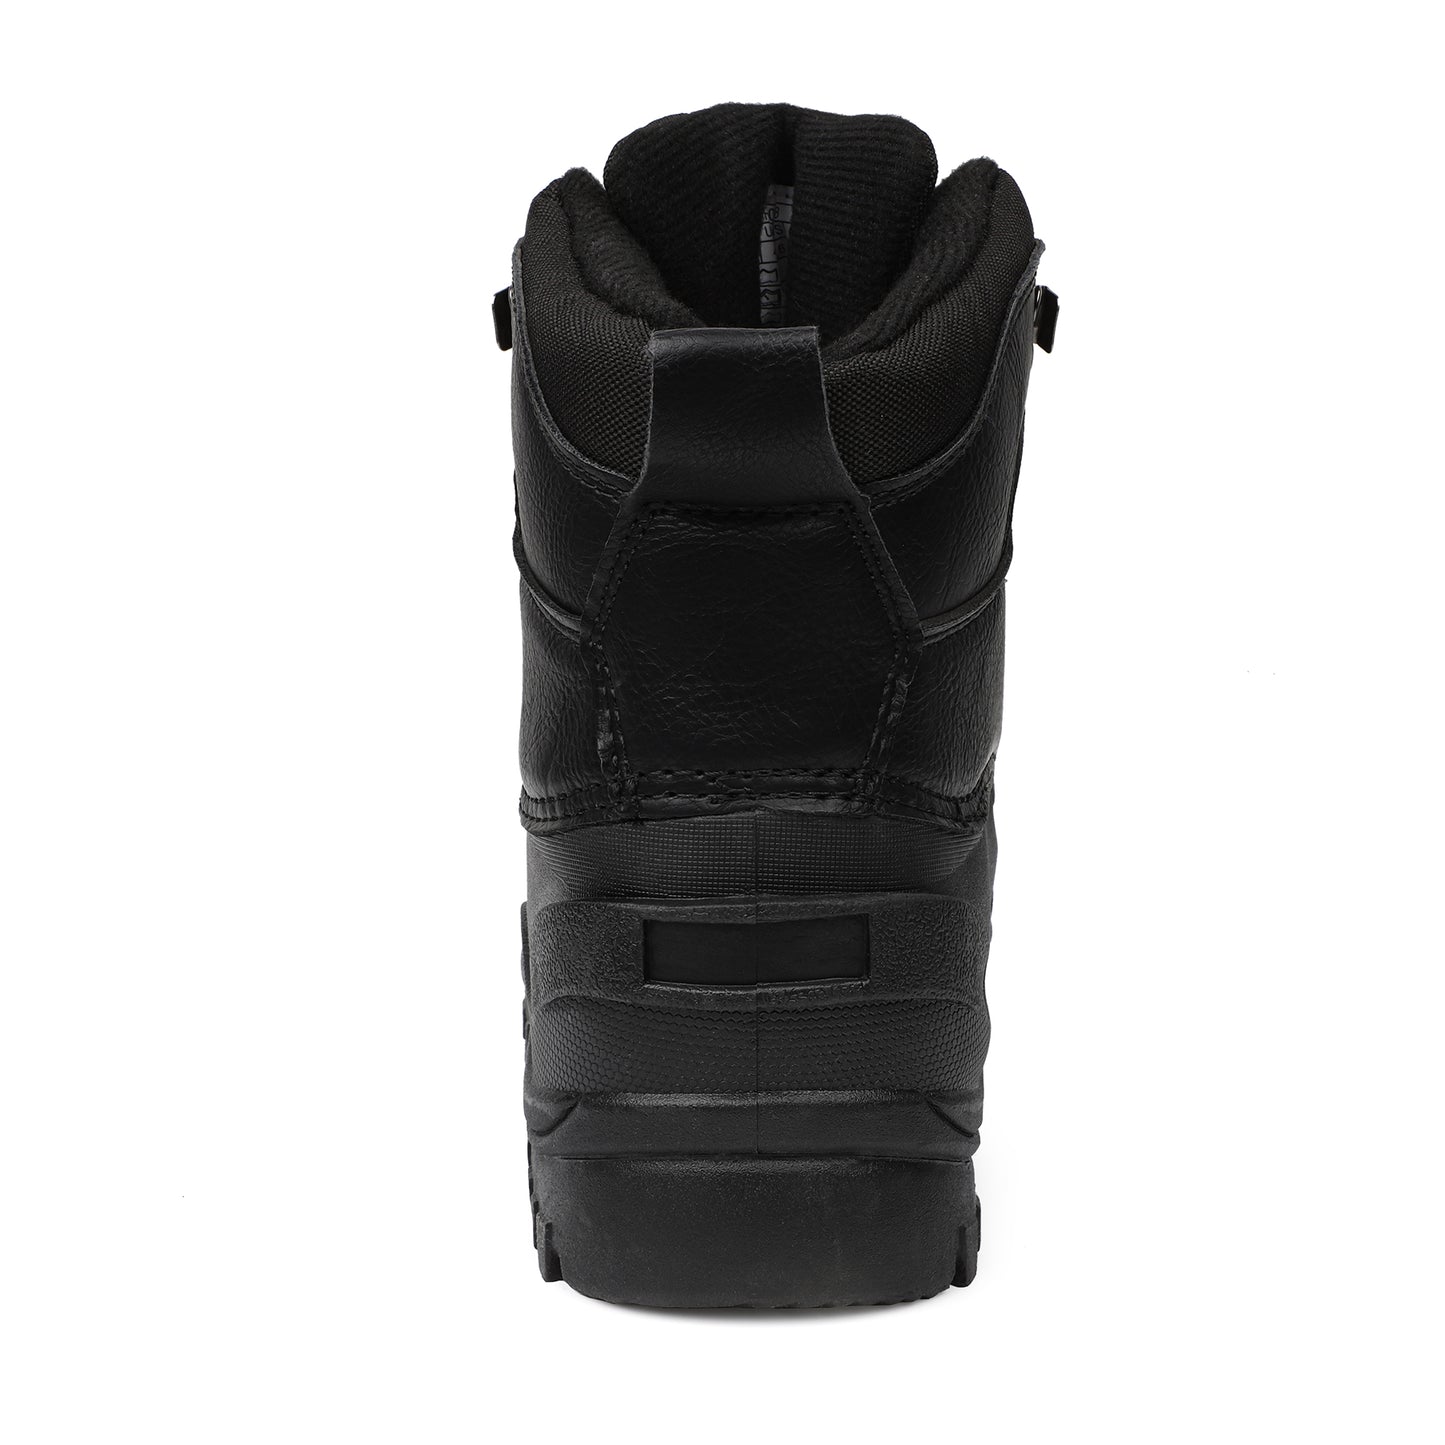 riemot Women's Snow Boots Black Waterproof & Slip-resistant Snow Boots